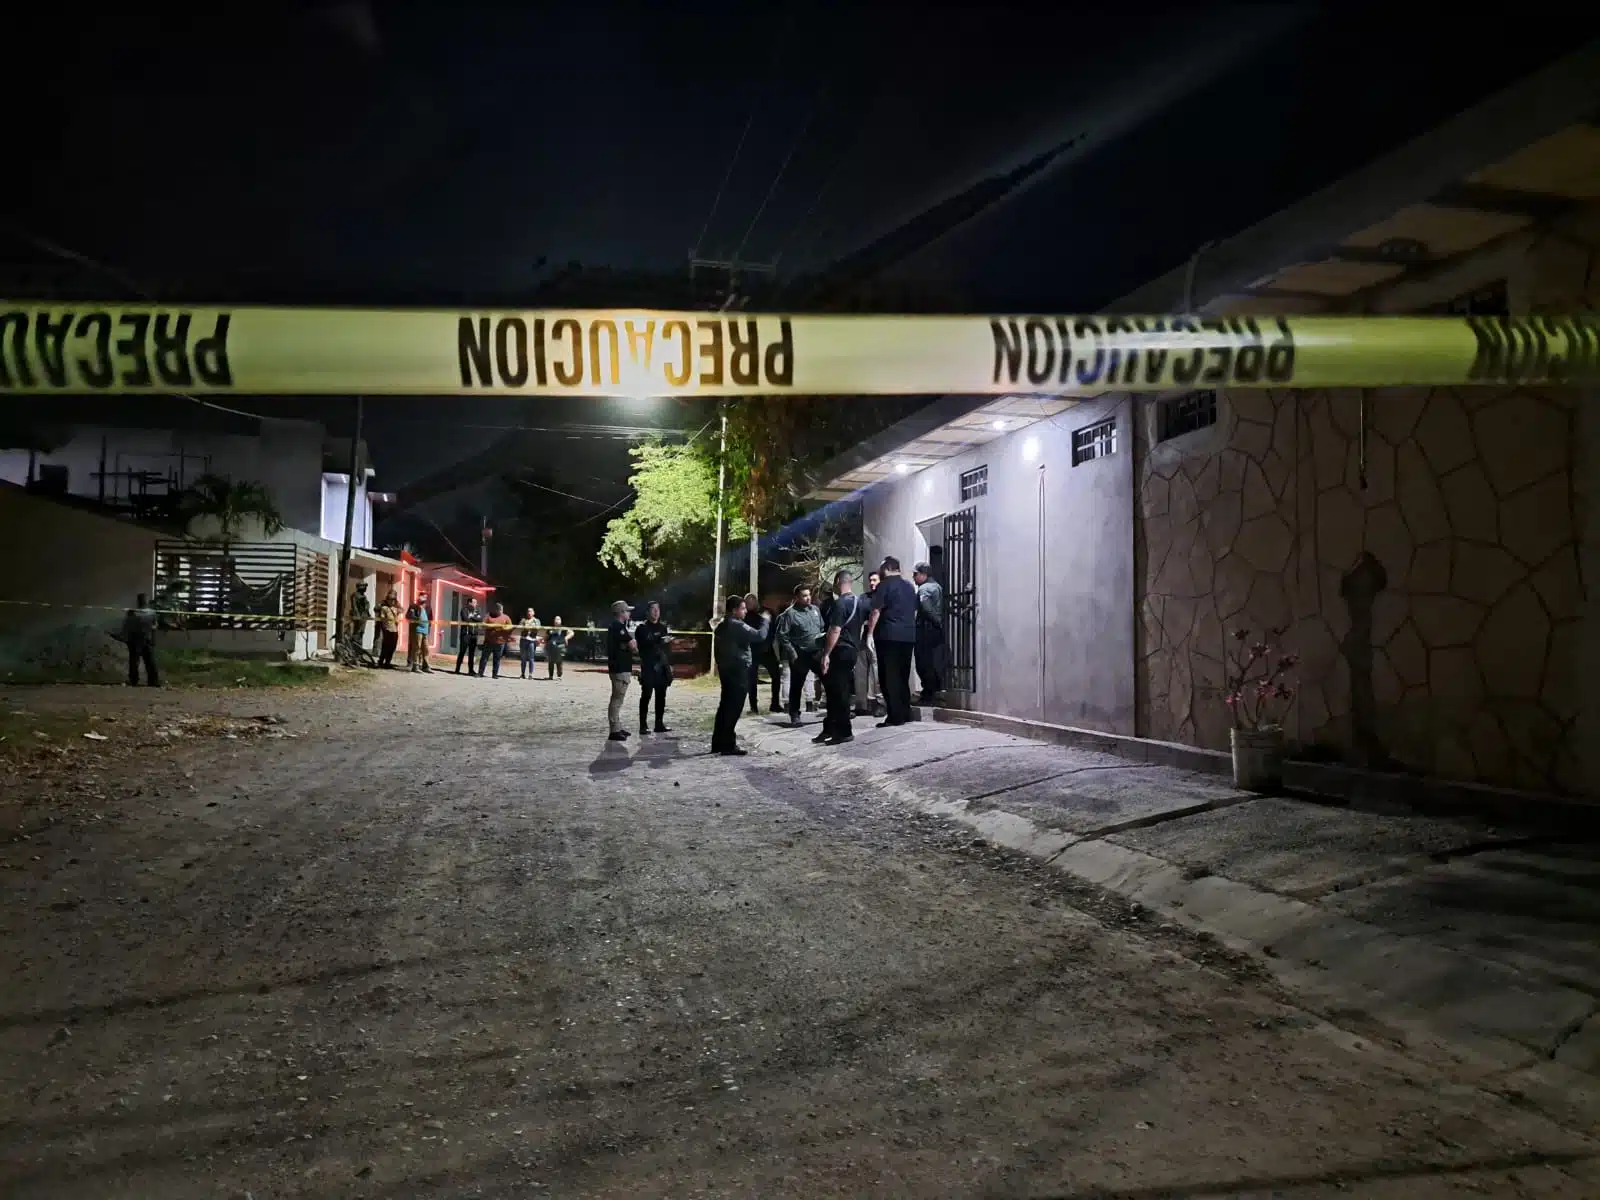 Zona acordonada donde se encuentran las autoridades investigadoras tras el hallazgo de un hombre asesinado